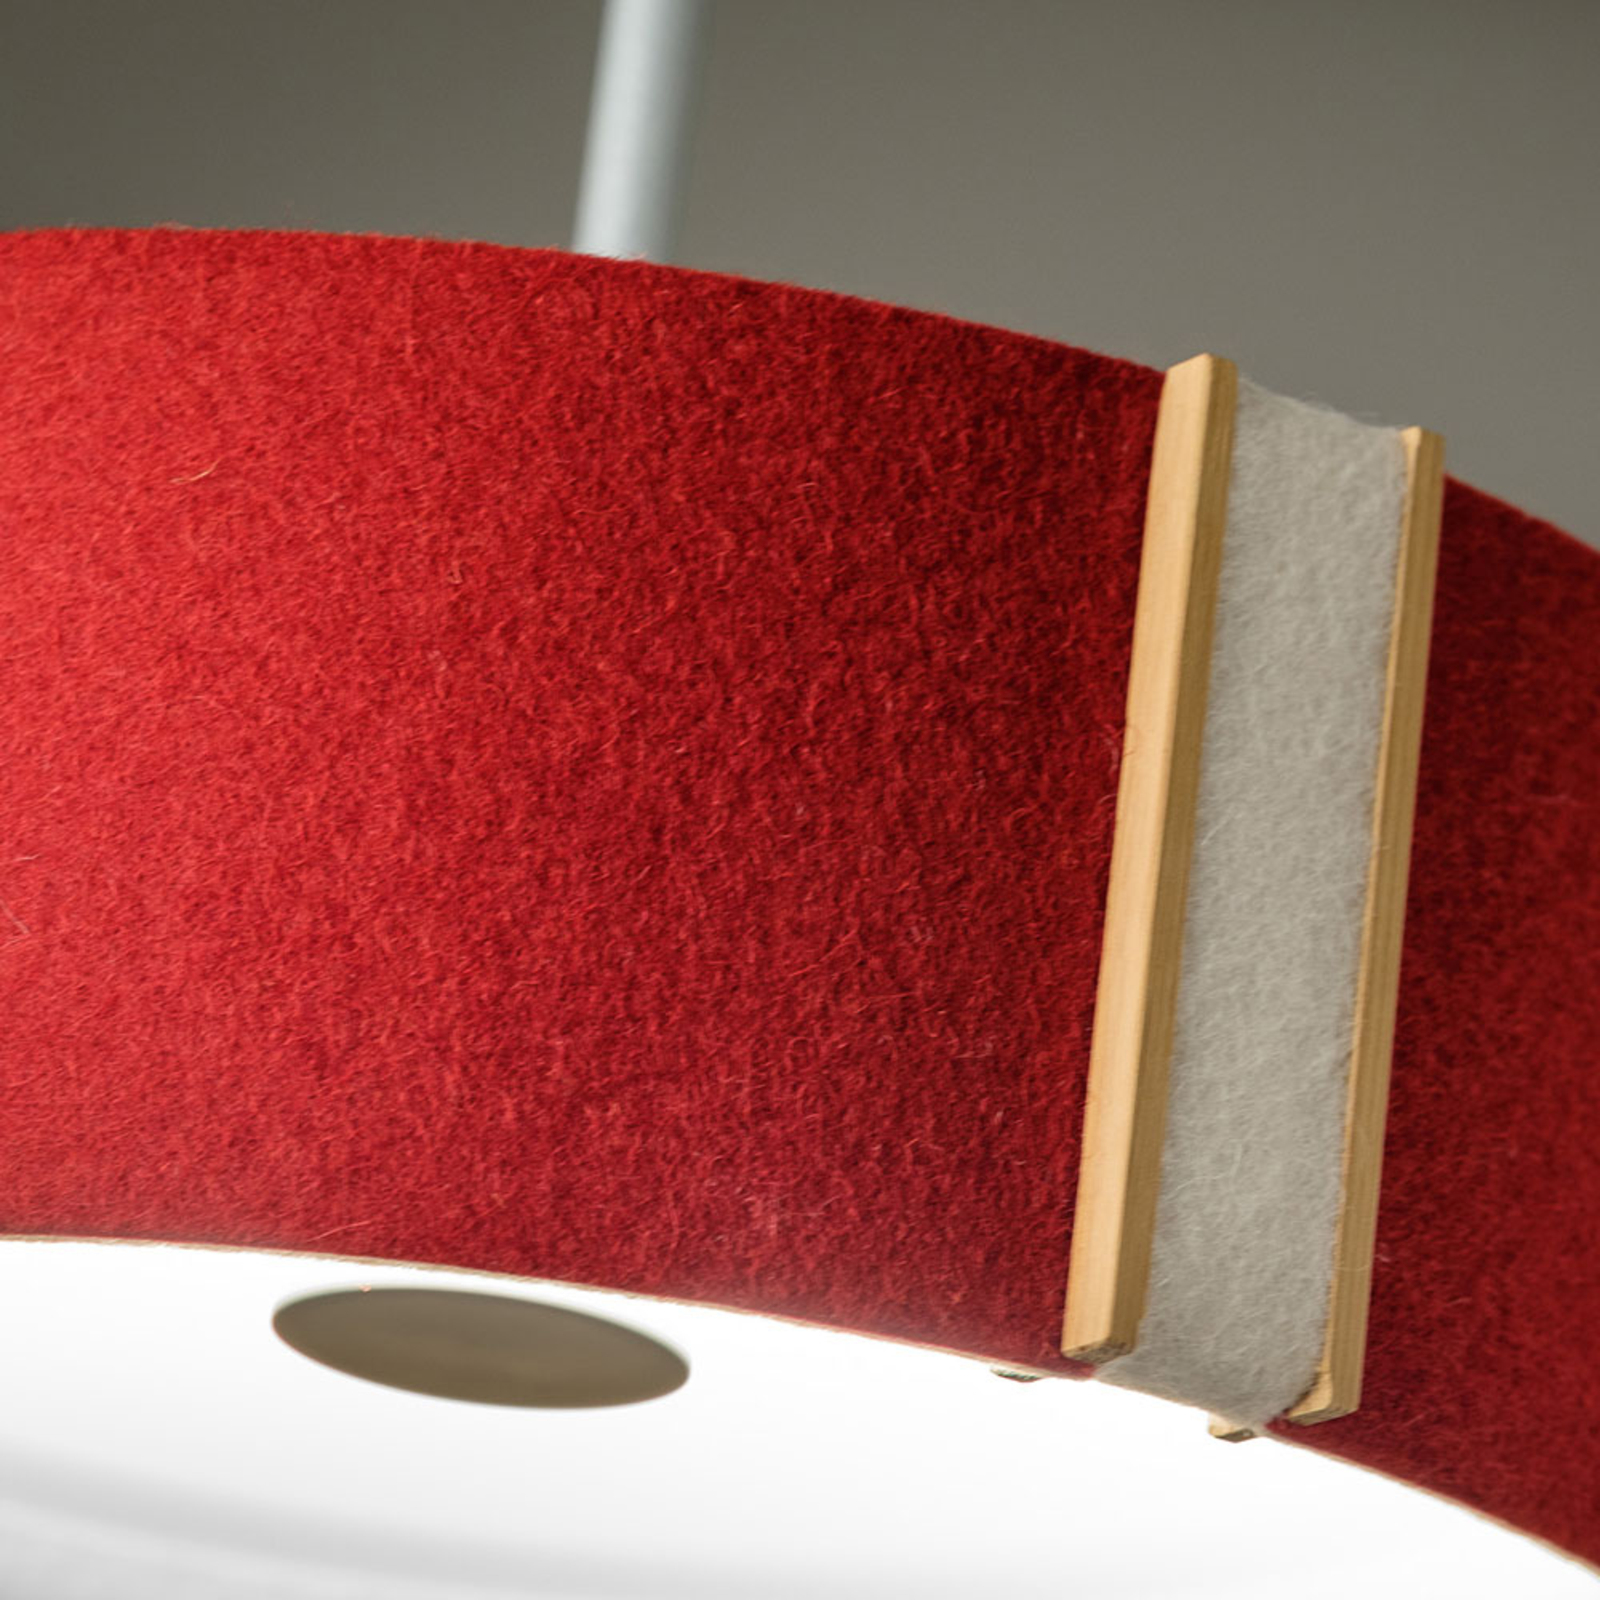 LARAfelt S LED pendant light, Ø20cm, red/woollen white